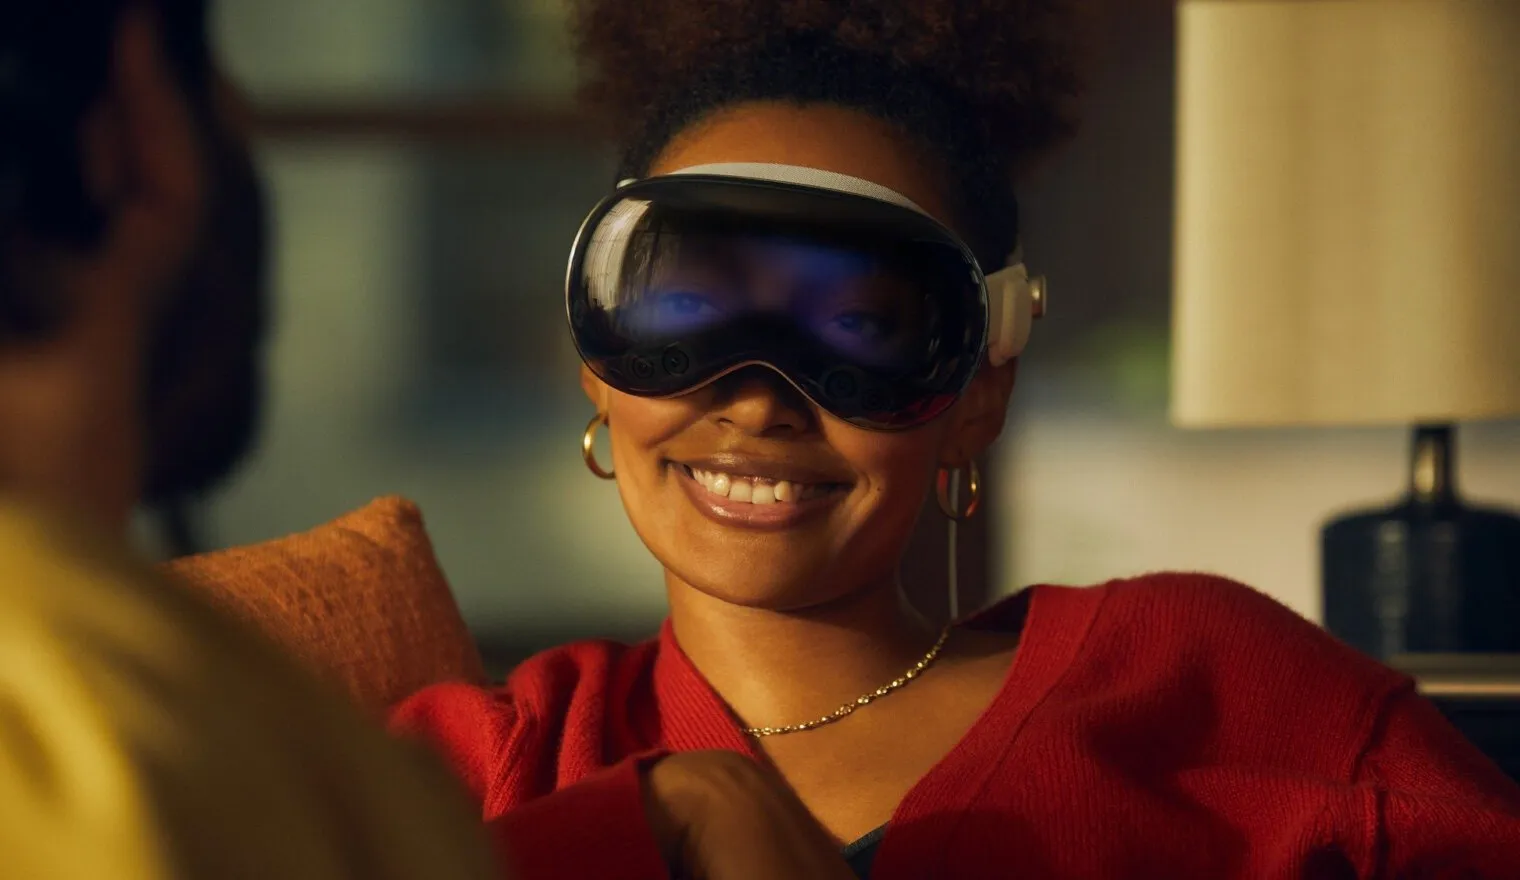 Lächelnde Frau, die das Apple Vision Pro im Passthrough-Modus trägt. Sie können ihre Augen auf dem äußeren Bildschirm des Geräts sehen.